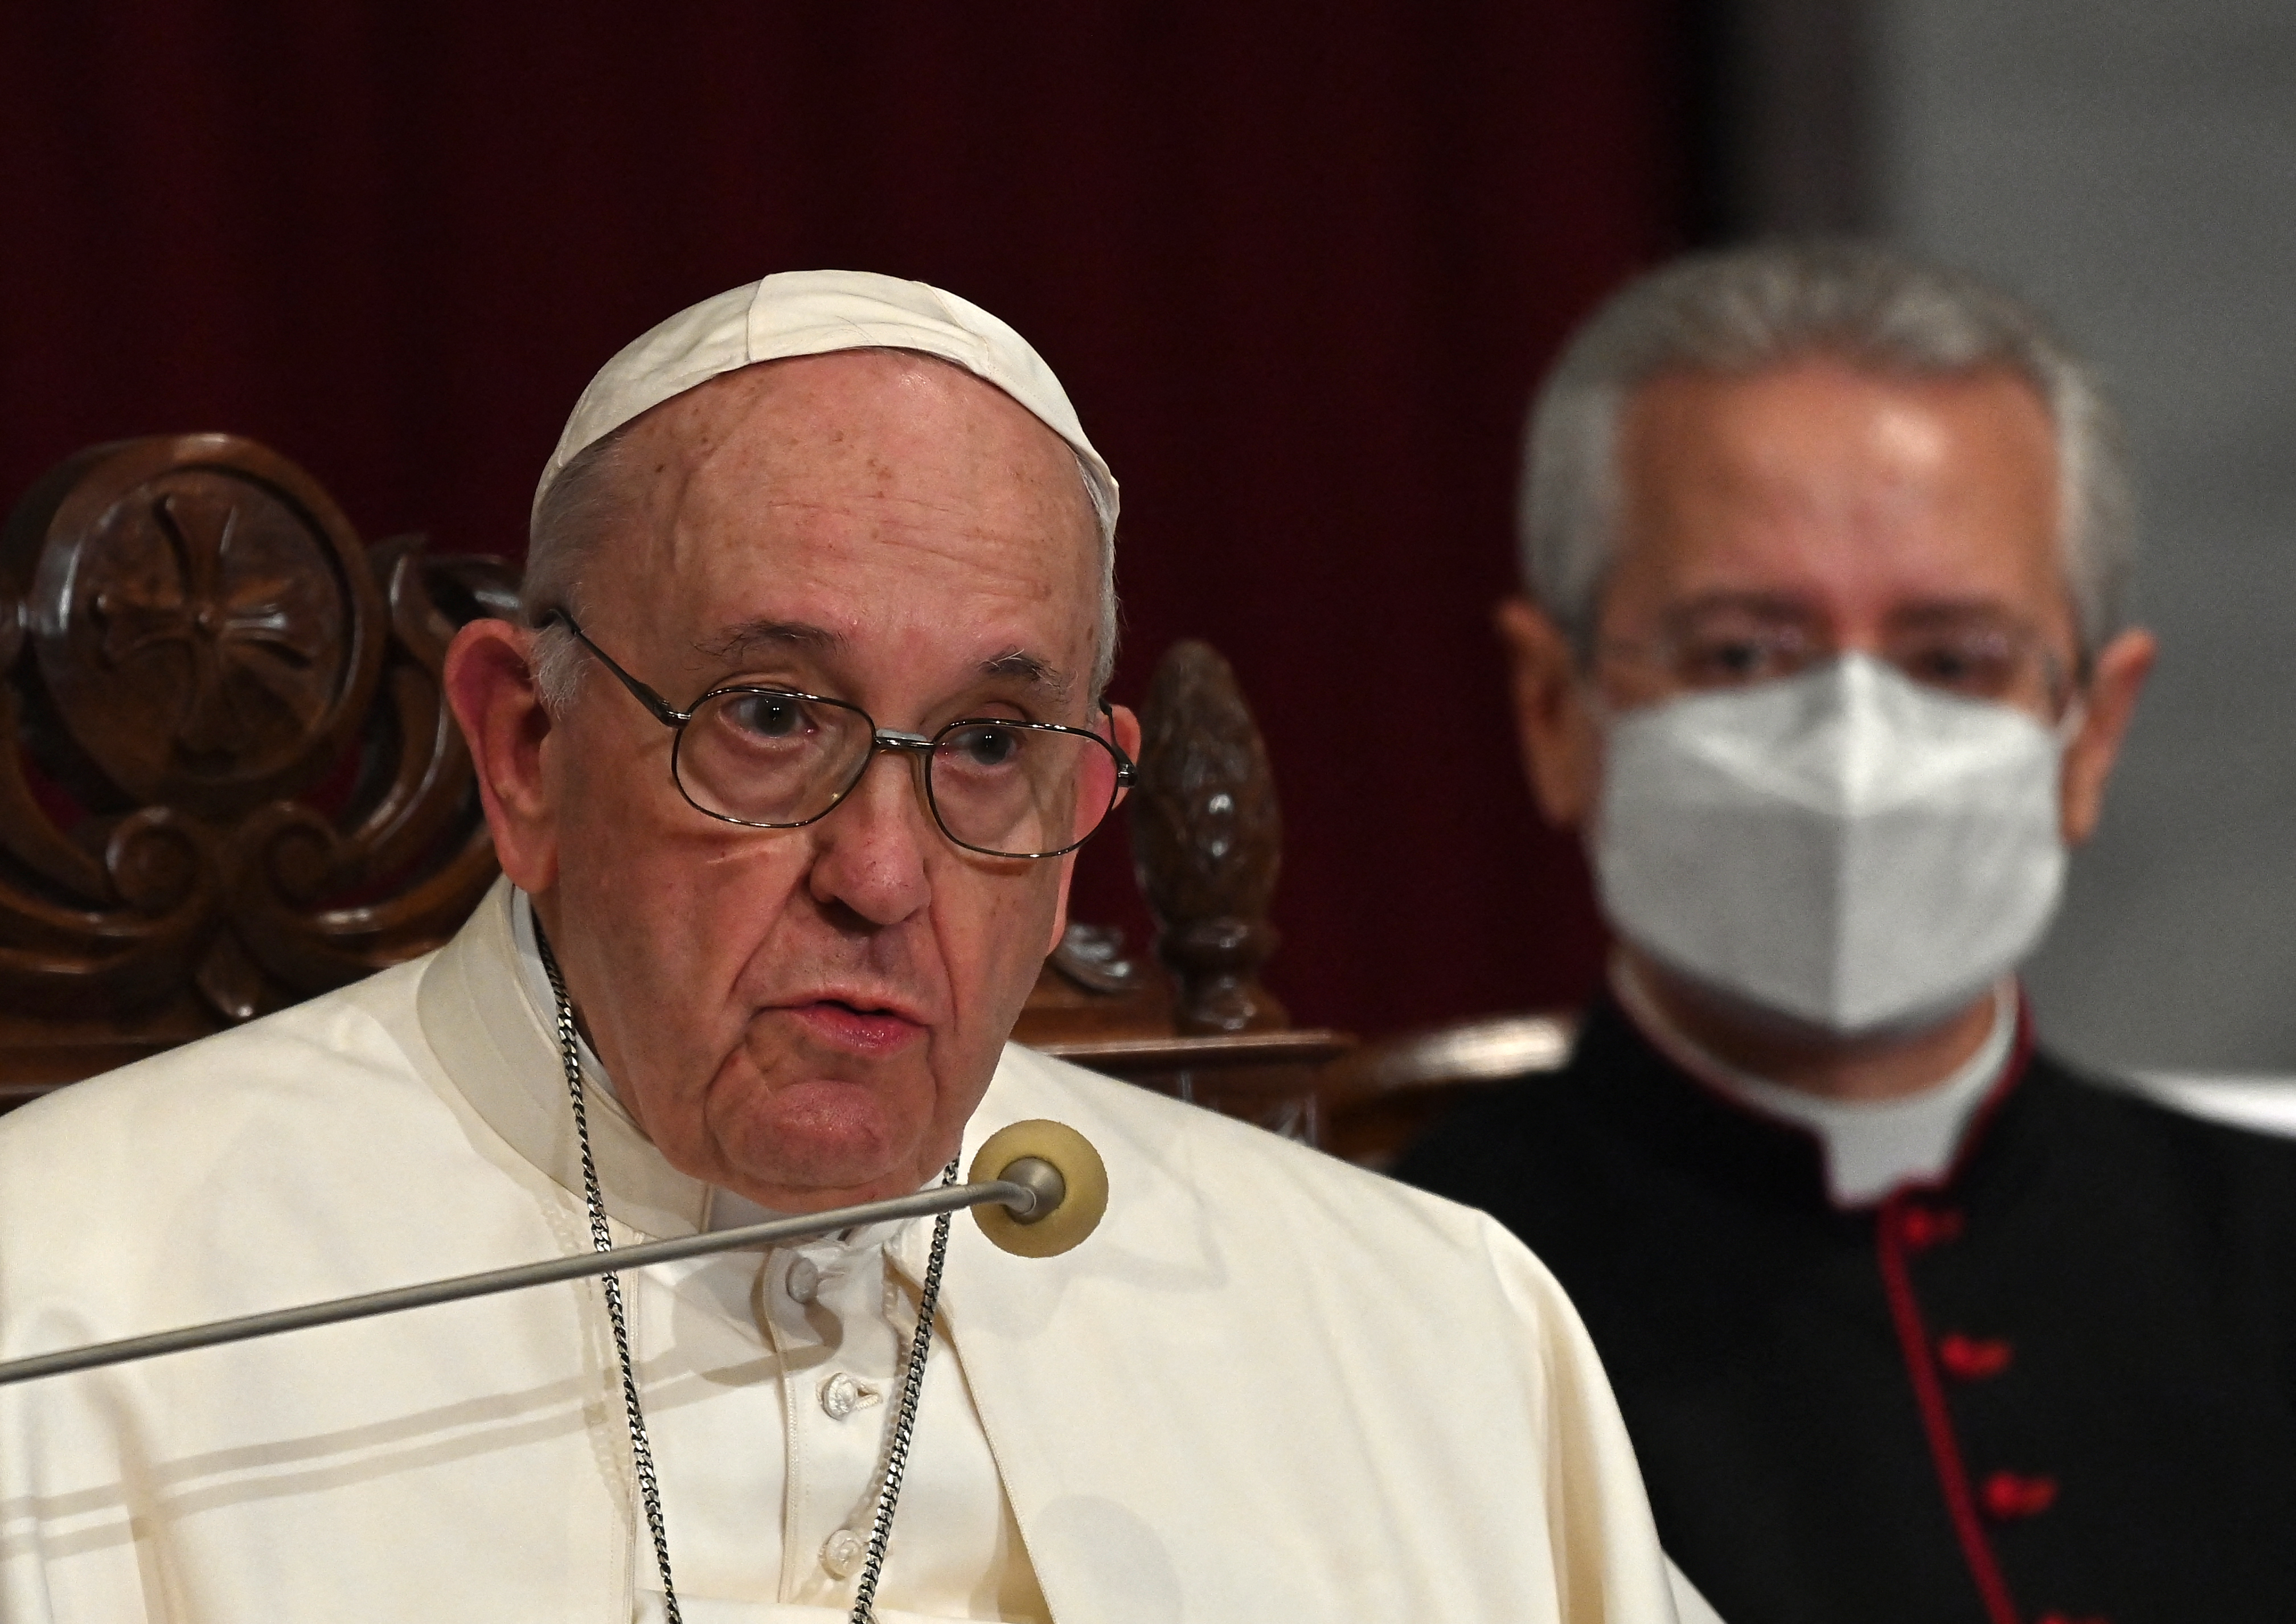 El papa Francisco y su opinión sobre la crisis en Venezuela: Nunca cierro la puerta a posibles soluciones